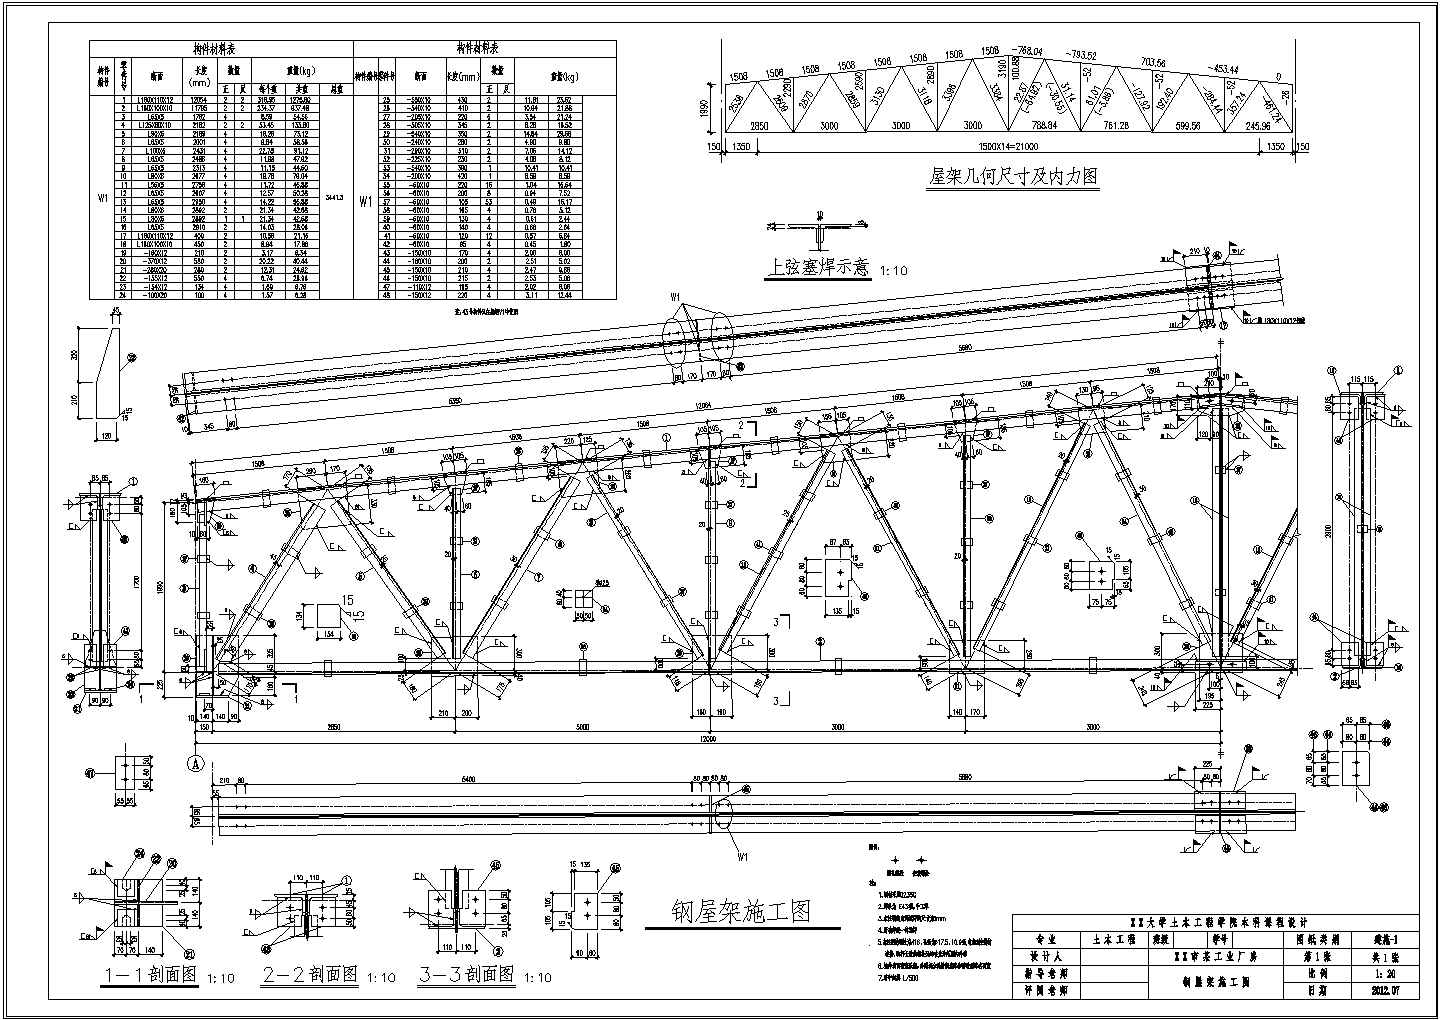 【桁架】24m梯形钢屋架施工图(cad)